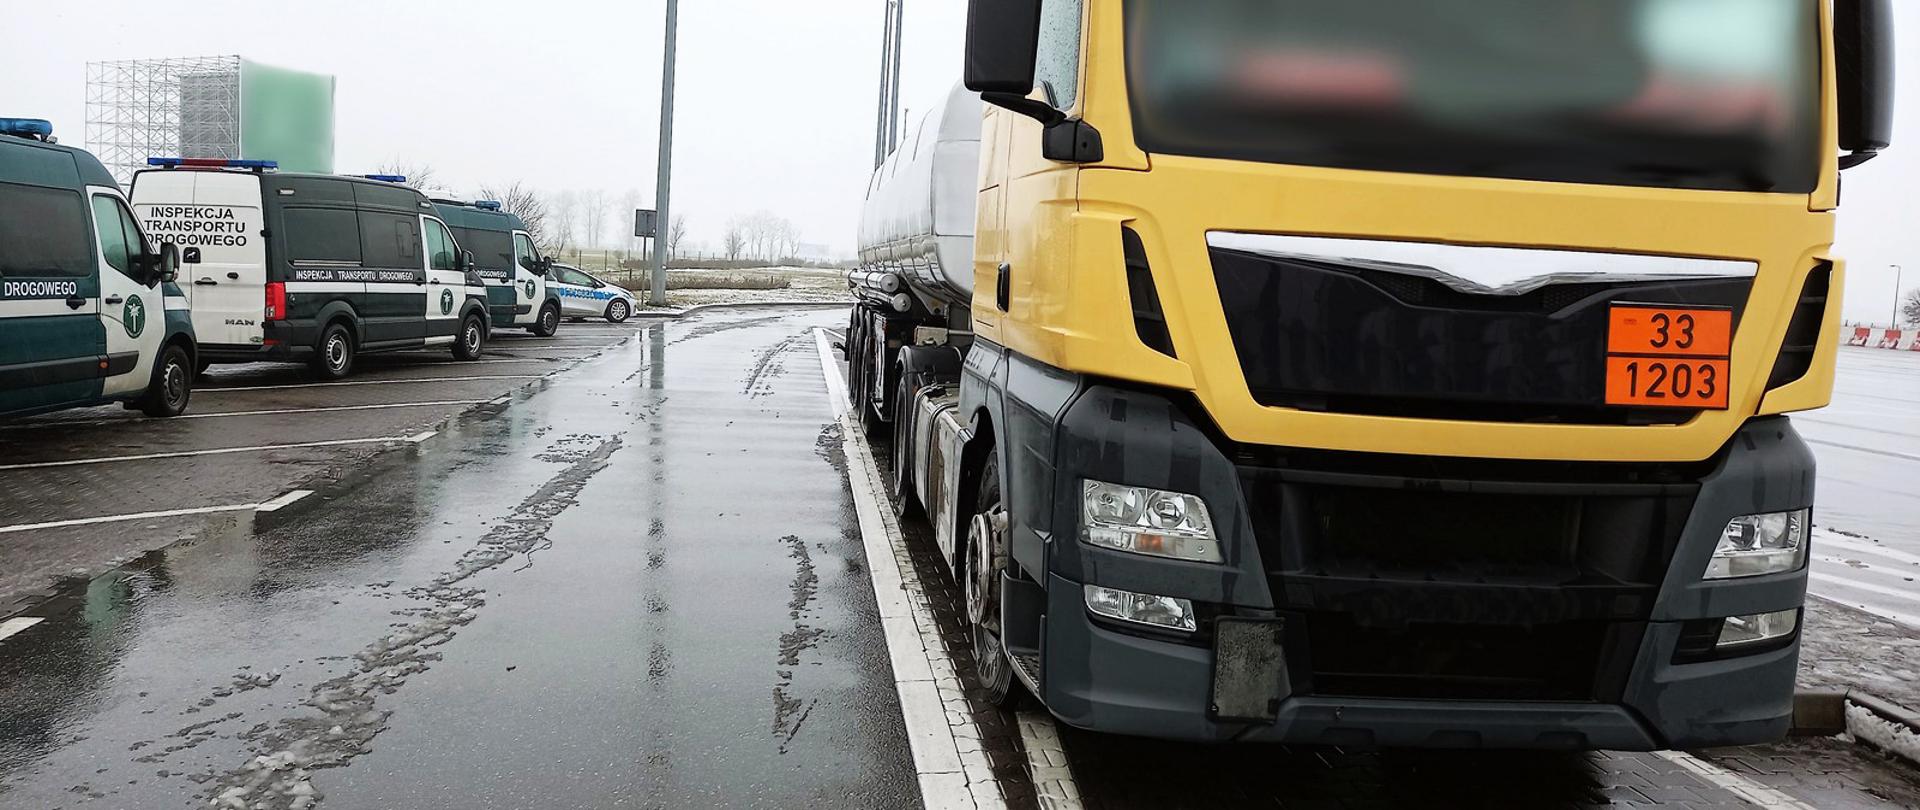 Ciężarówka cysterna zatrzymana do kontroli na autostradzie A2
